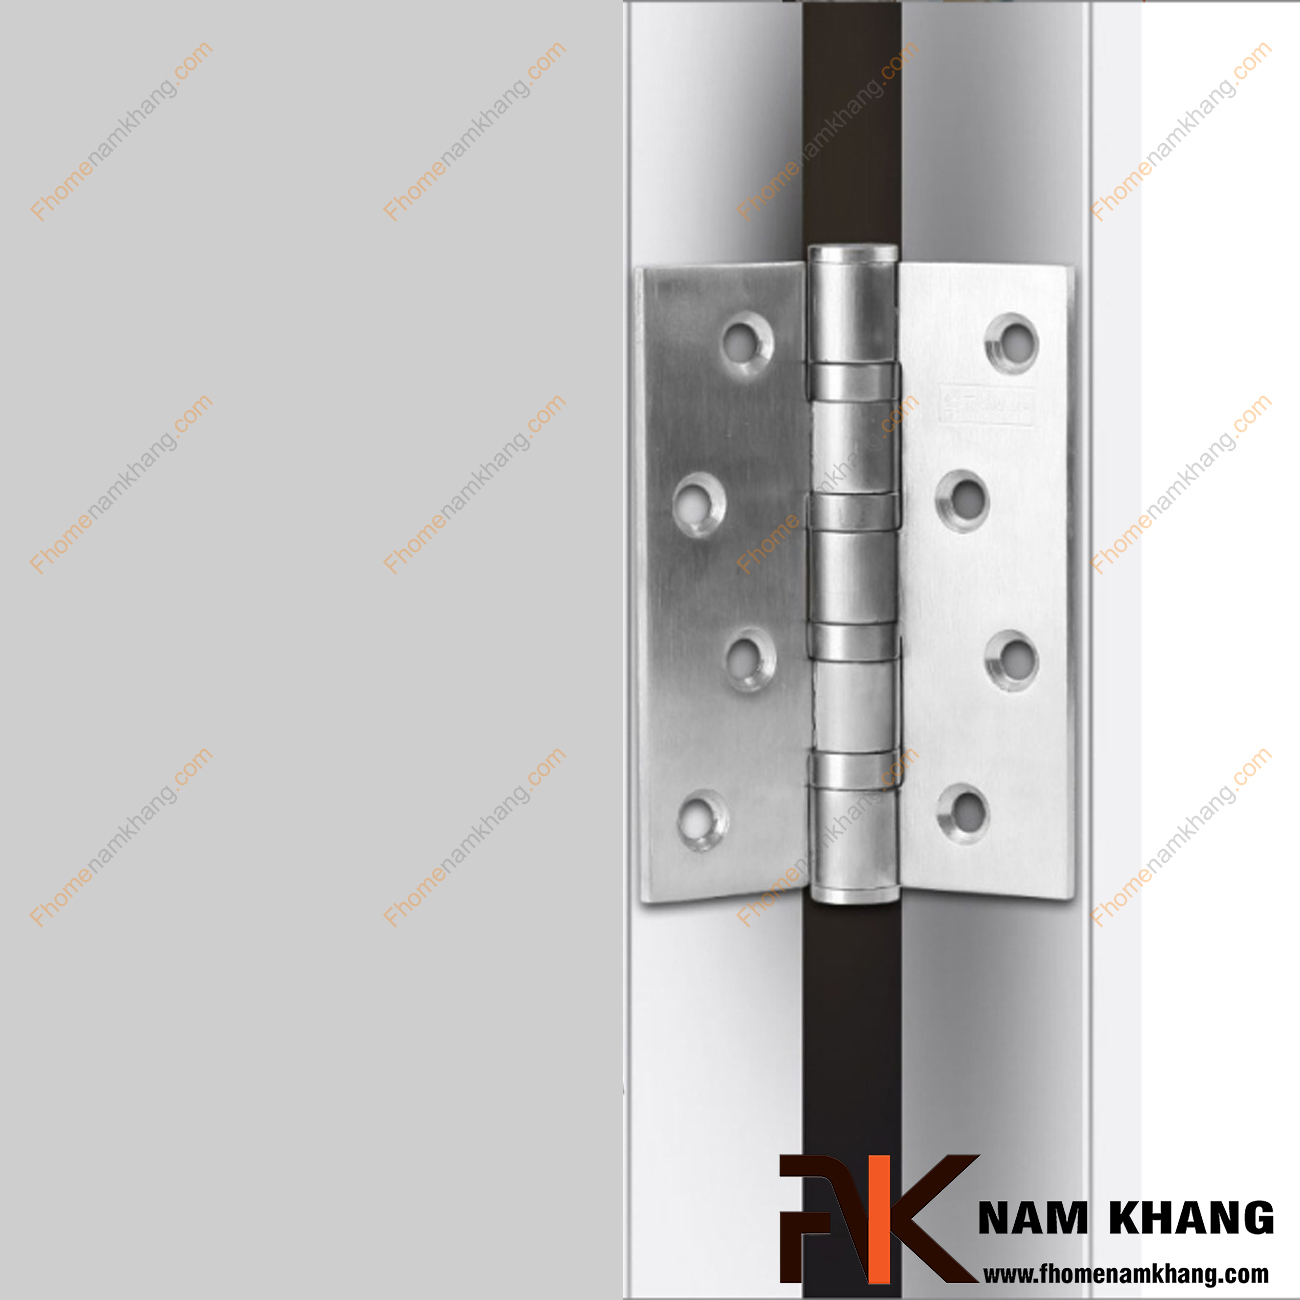 Bản lề lá bằng inox cao cấp NK307-13INOX là một sản phẩm thông dụng và quan trọng khi lắp đặt các cánh cửa. Kích thước của cánh cửa càng to thì yêu cầu về bản lề cửa càng lớn do phải đủ độ bền để nâng đỡ được trọng lượng của cánh cửa.